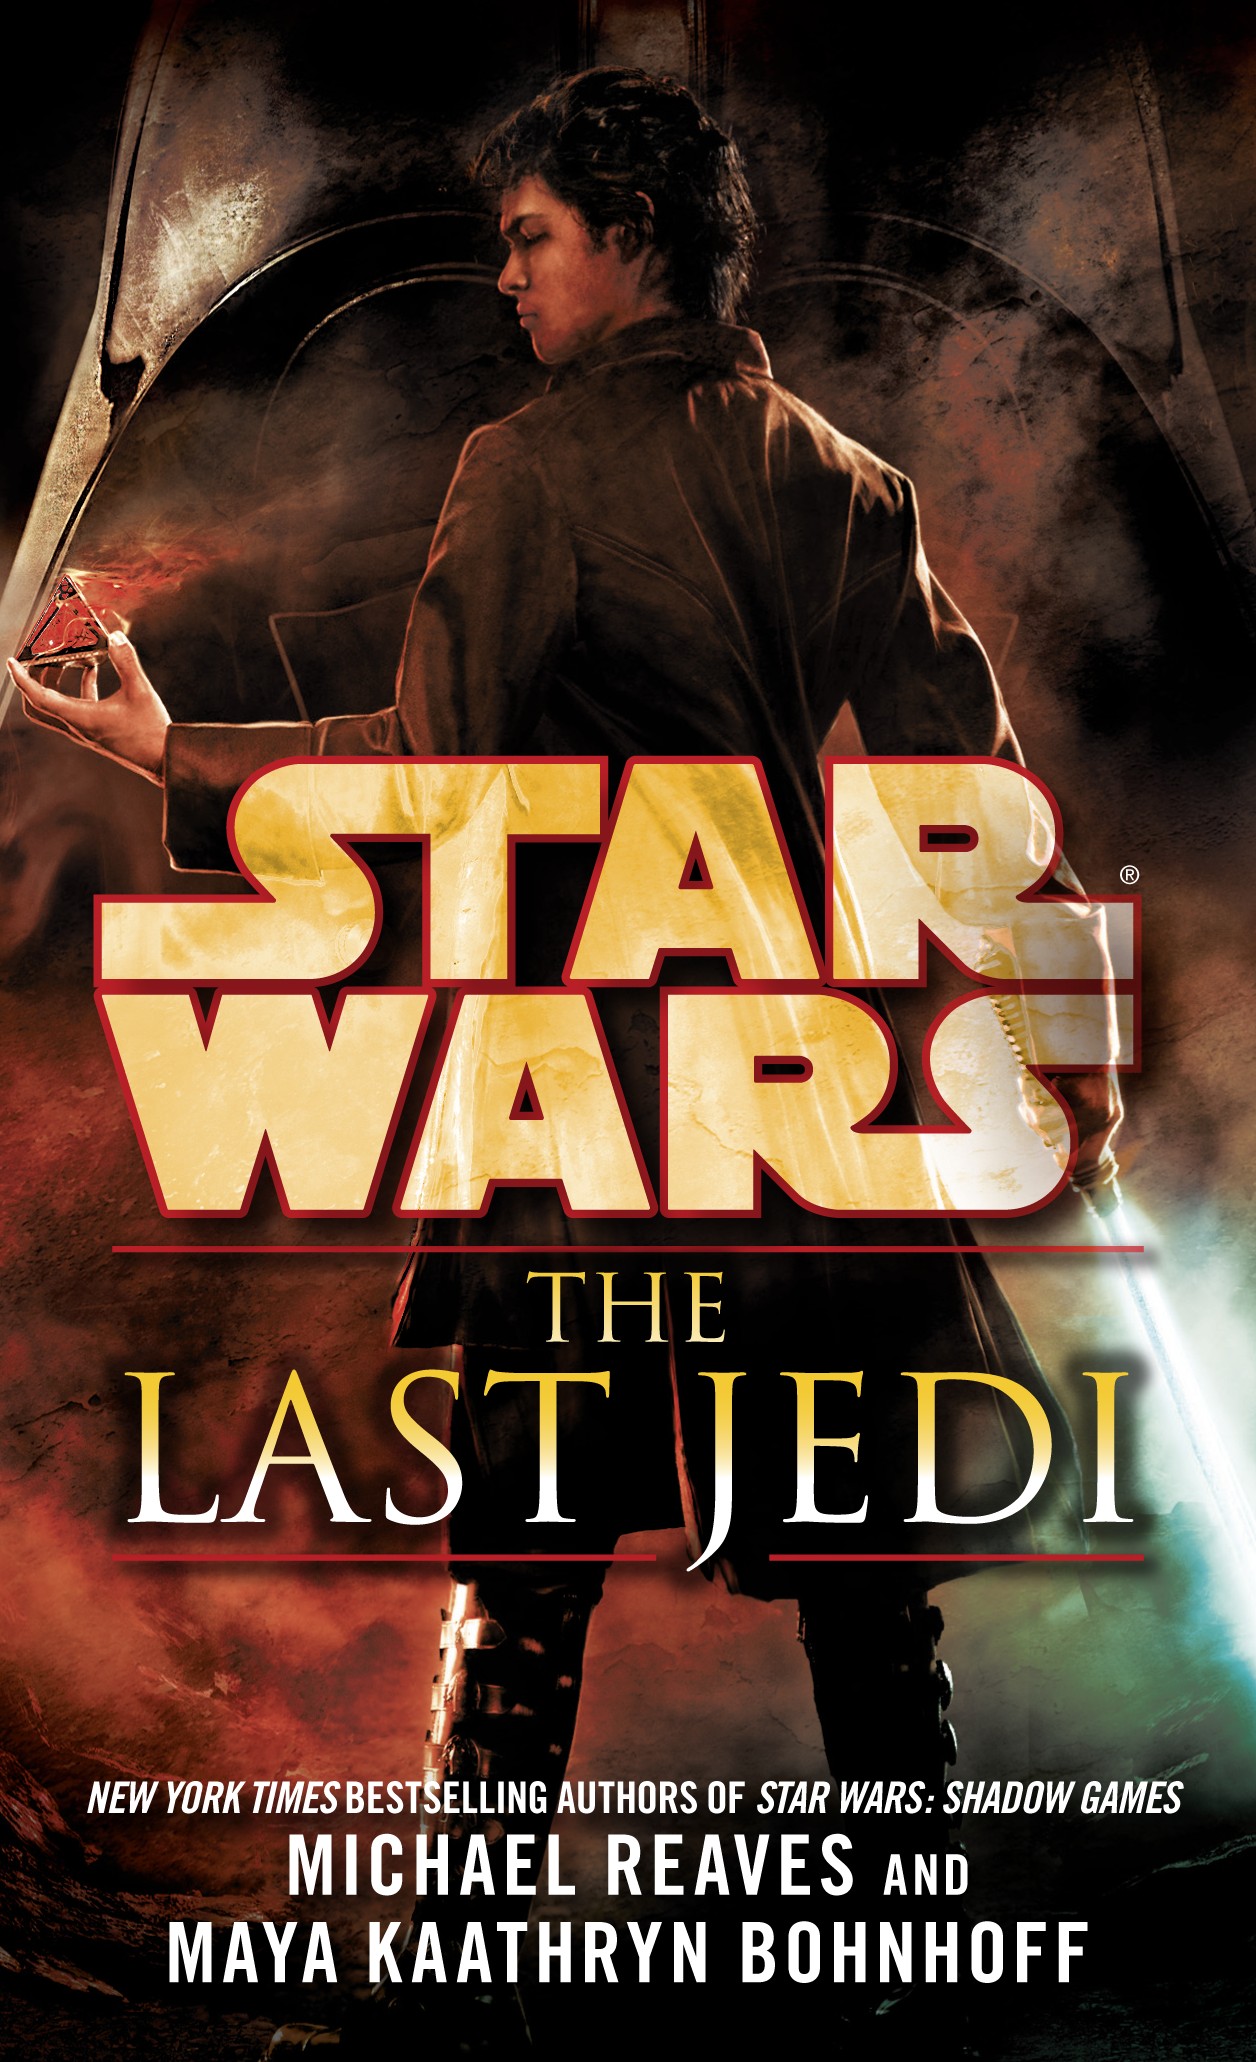 The Last Jedi (novel) | Wookieepedia | Fandom